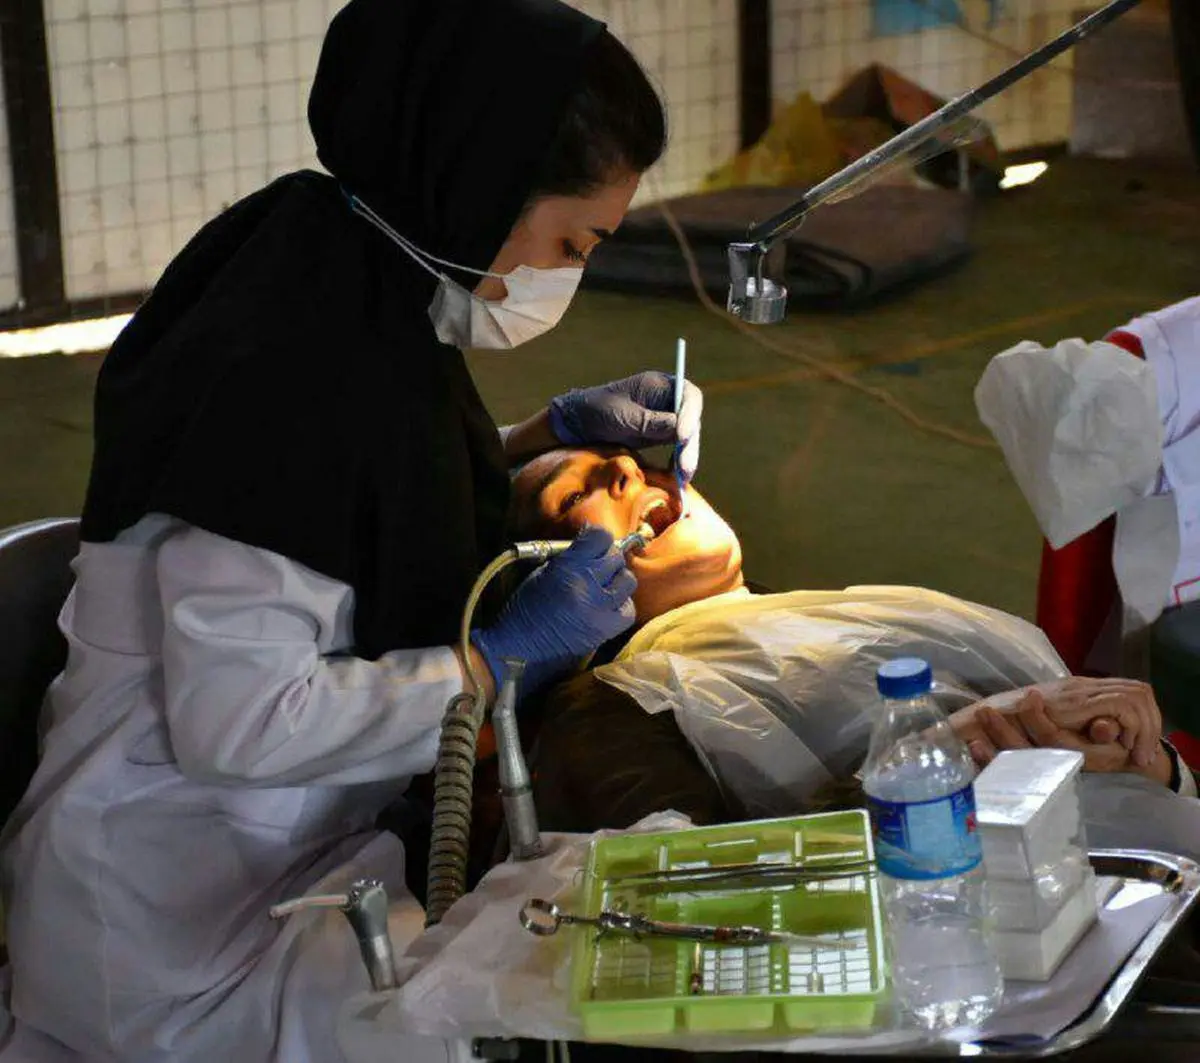 ارائه خدمات رایگان دندانپزشکی به مردم مناطق زلزله زده شهرستان ثلاث باباجانی